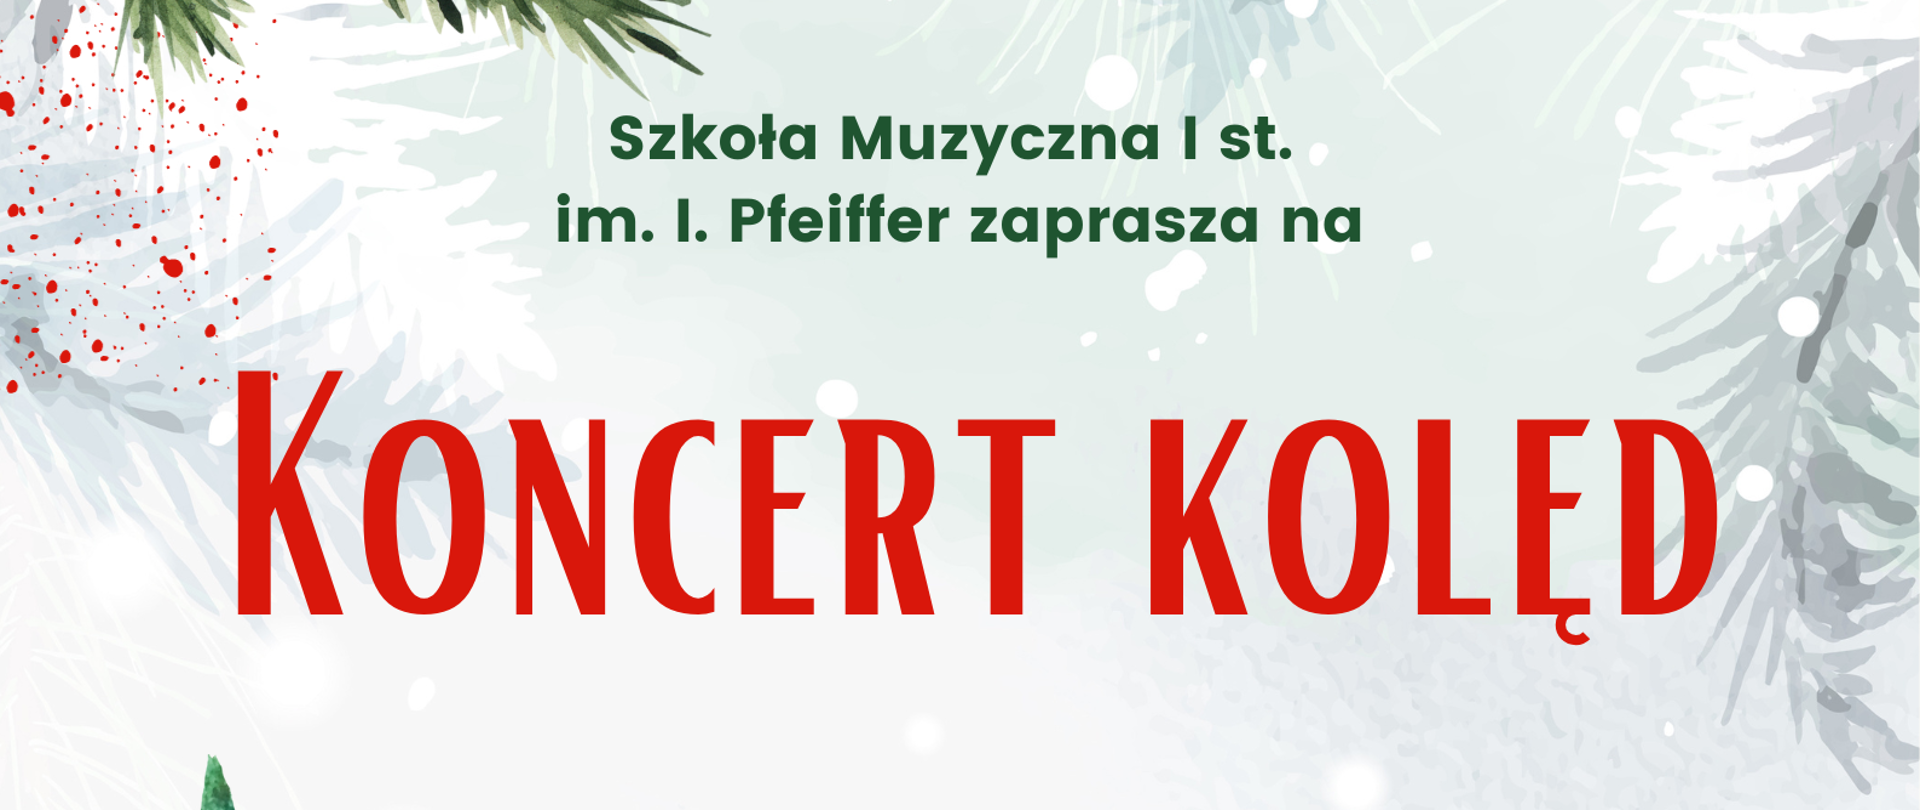 Plakat z napisem Szkoła Muzyczna I stopnia zaprasza na Koncert Kolęd 20 grudnia o godzinie 17. W tle motywy świąteczne.